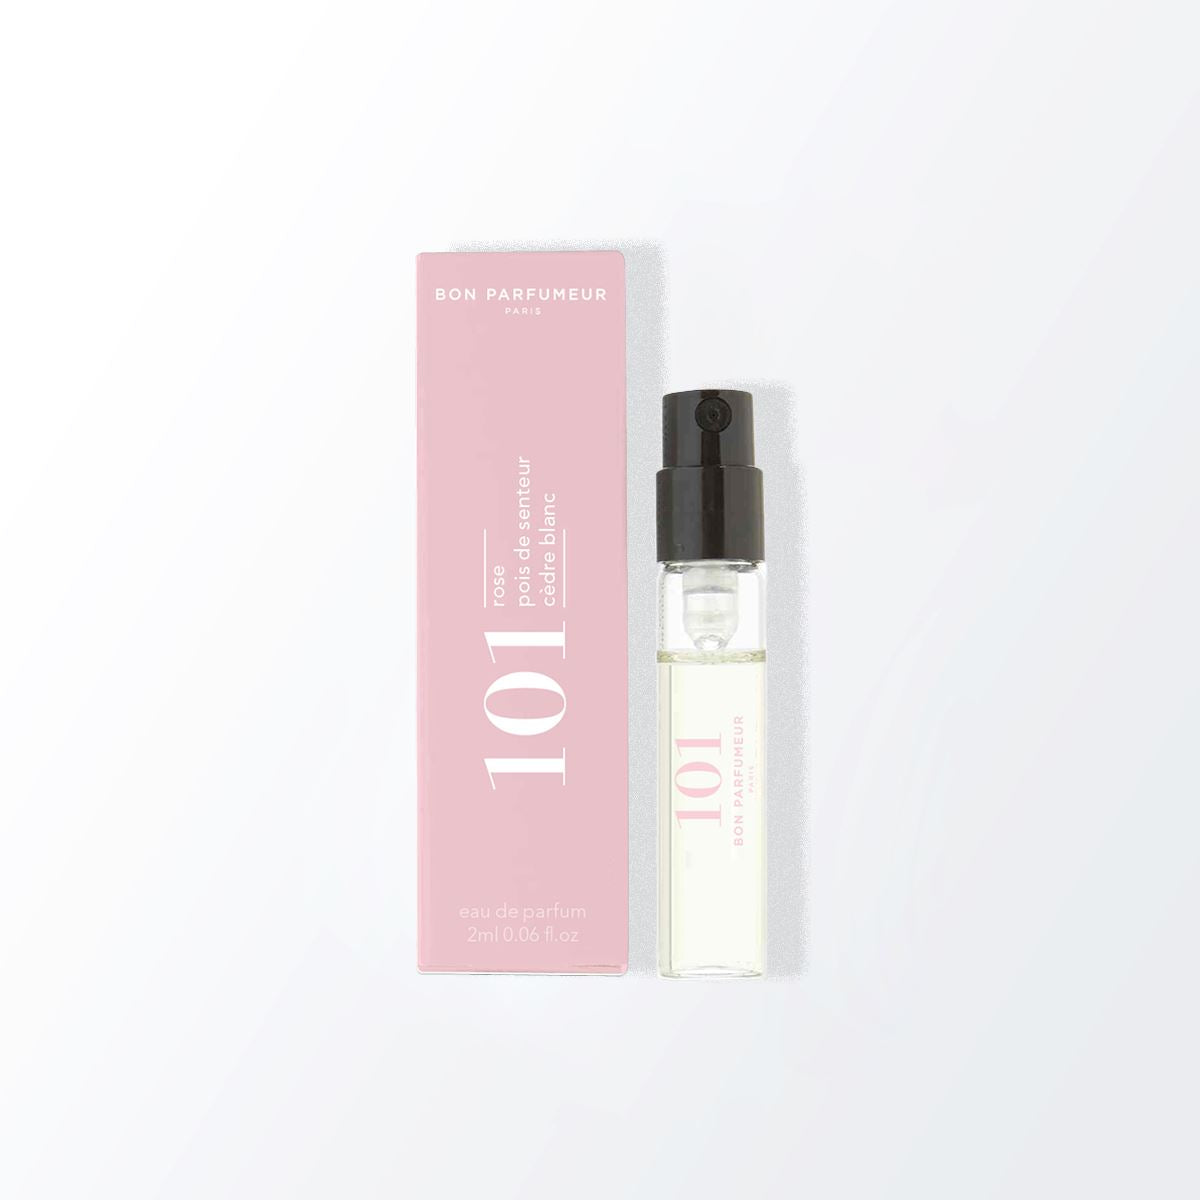 Spray parfumé payant Bon Parfumeur 101: Rose, pois de senteur, cèdre blanc 